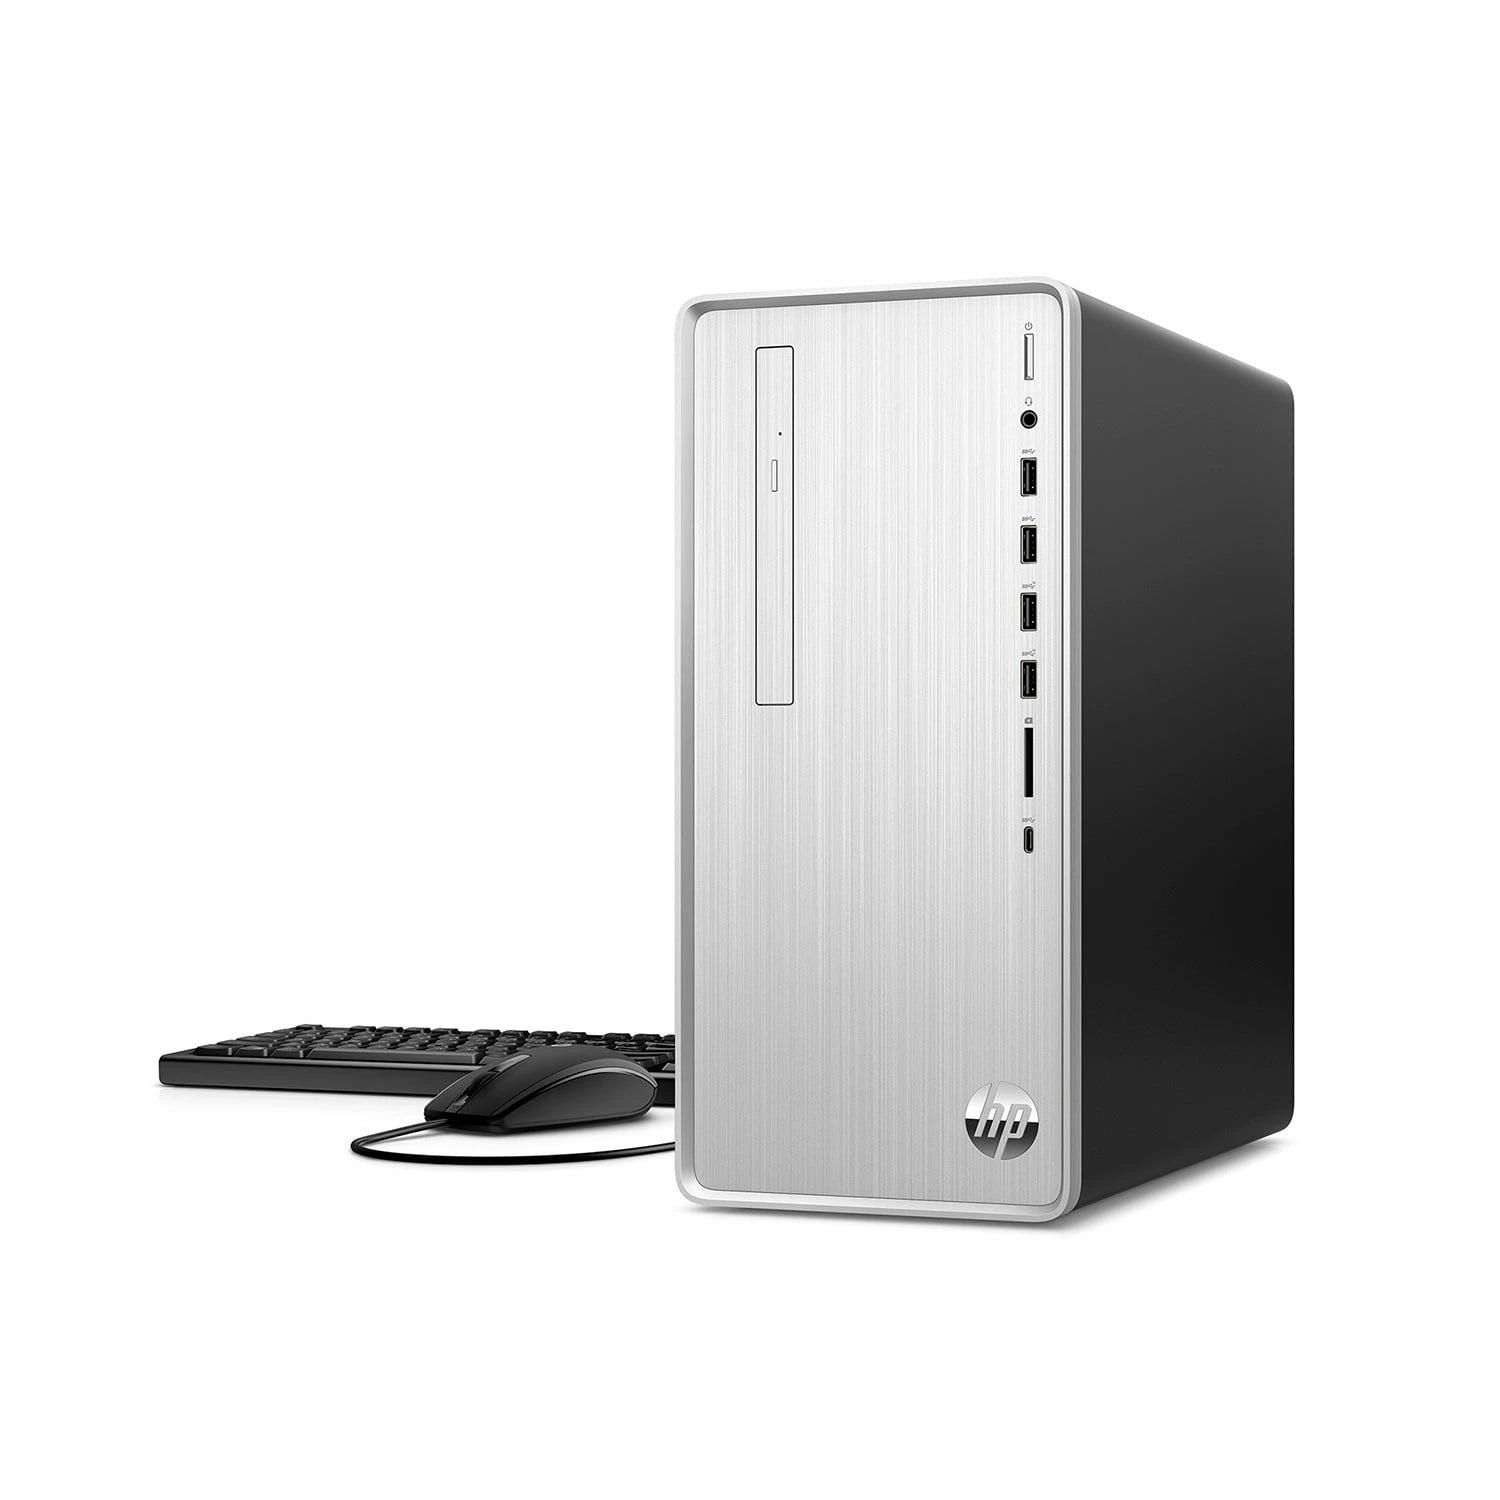 HP Z2 G5 Mini Workstation School ＆ Business Desktop (Intel i5-10500 6-Core,  8GB RAM, 256GB PCIe SSD, Intel UHD 630, WiFi, Bluetooth, USB 3.2, Display 